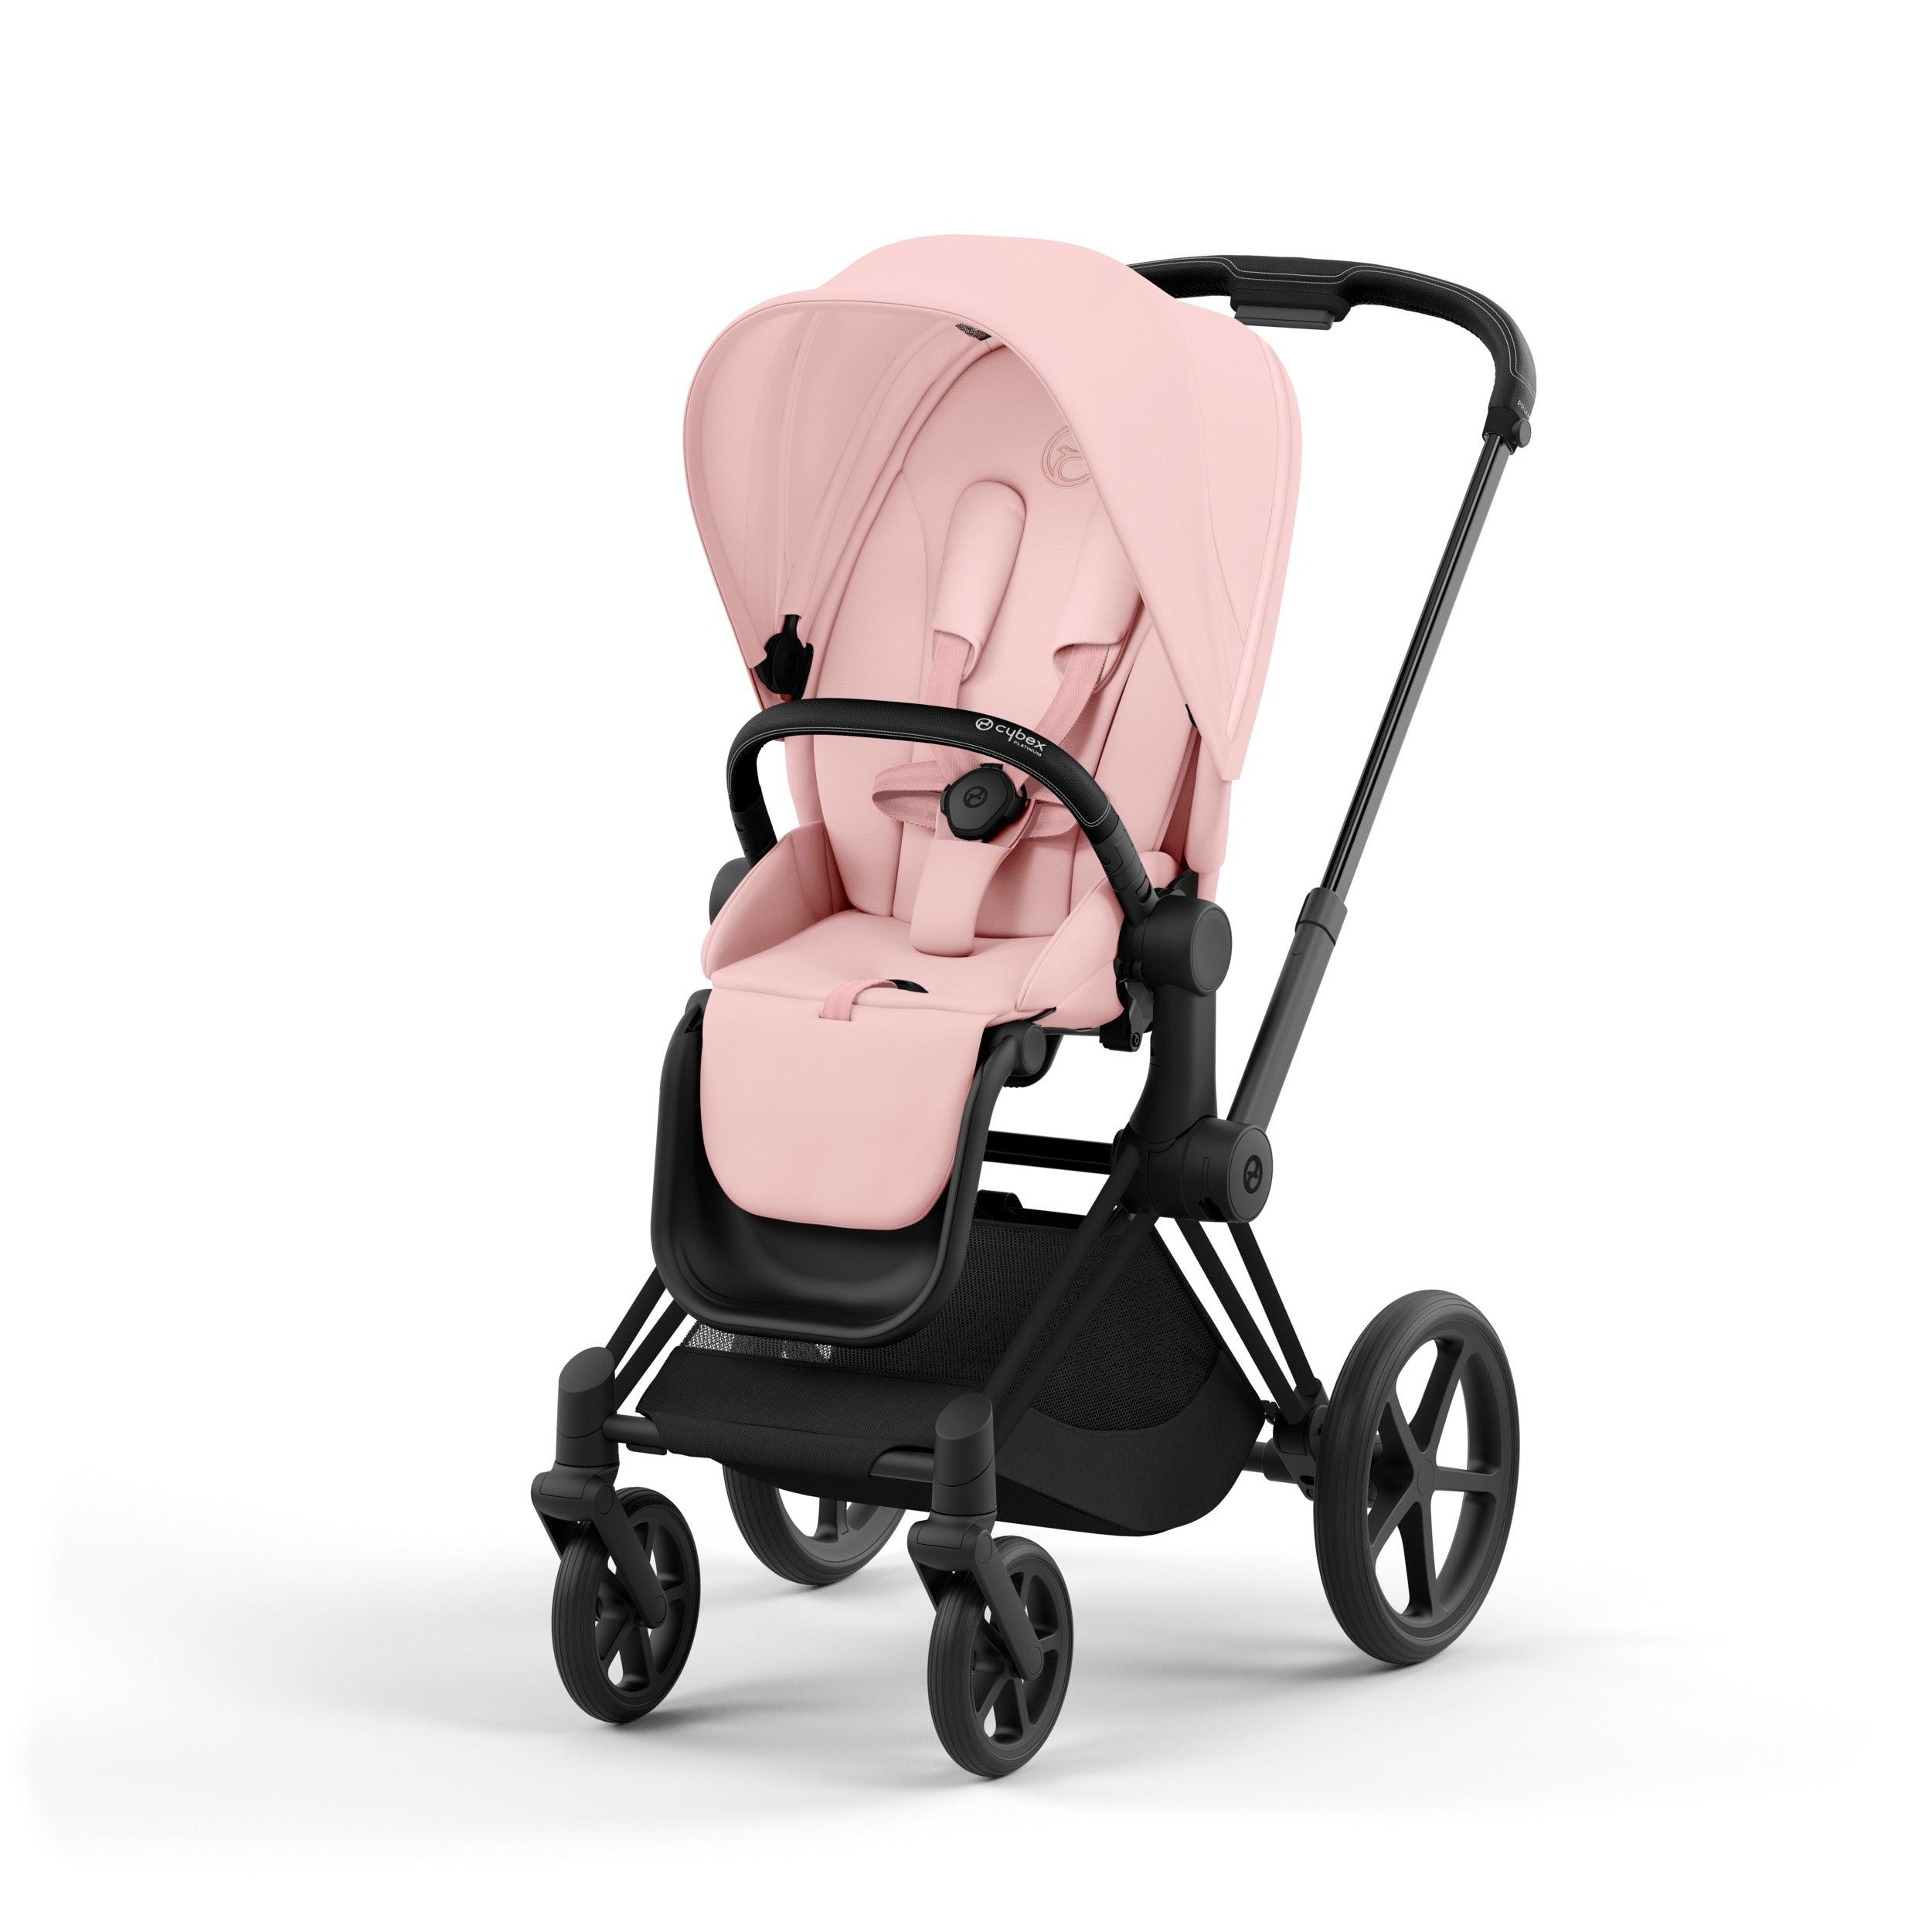 CYBEX Priam Baby Stroller in Peach Pink & Matte Black frame